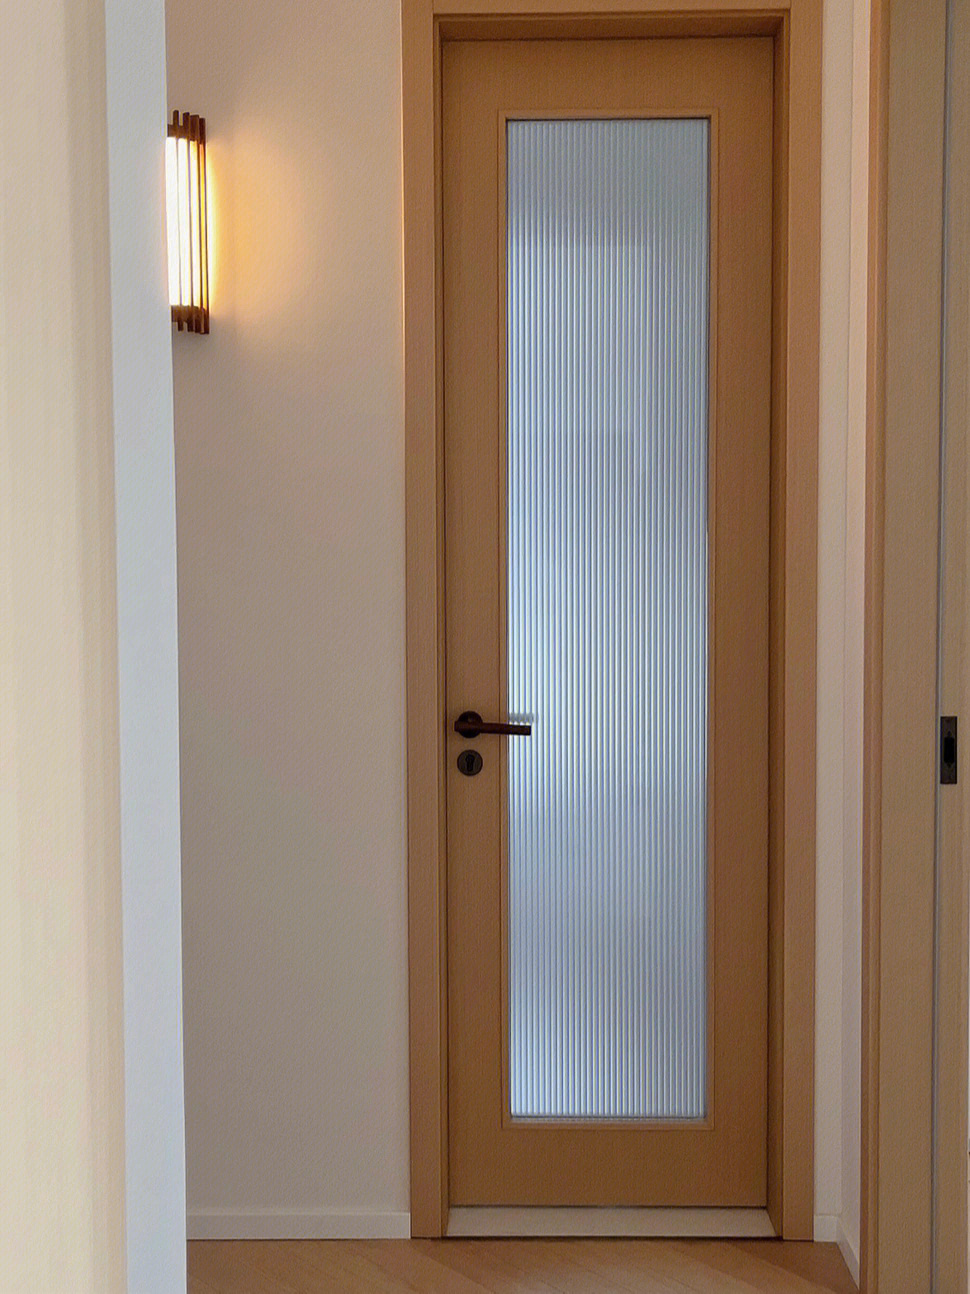 原木风卫生间门双层超白玻璃